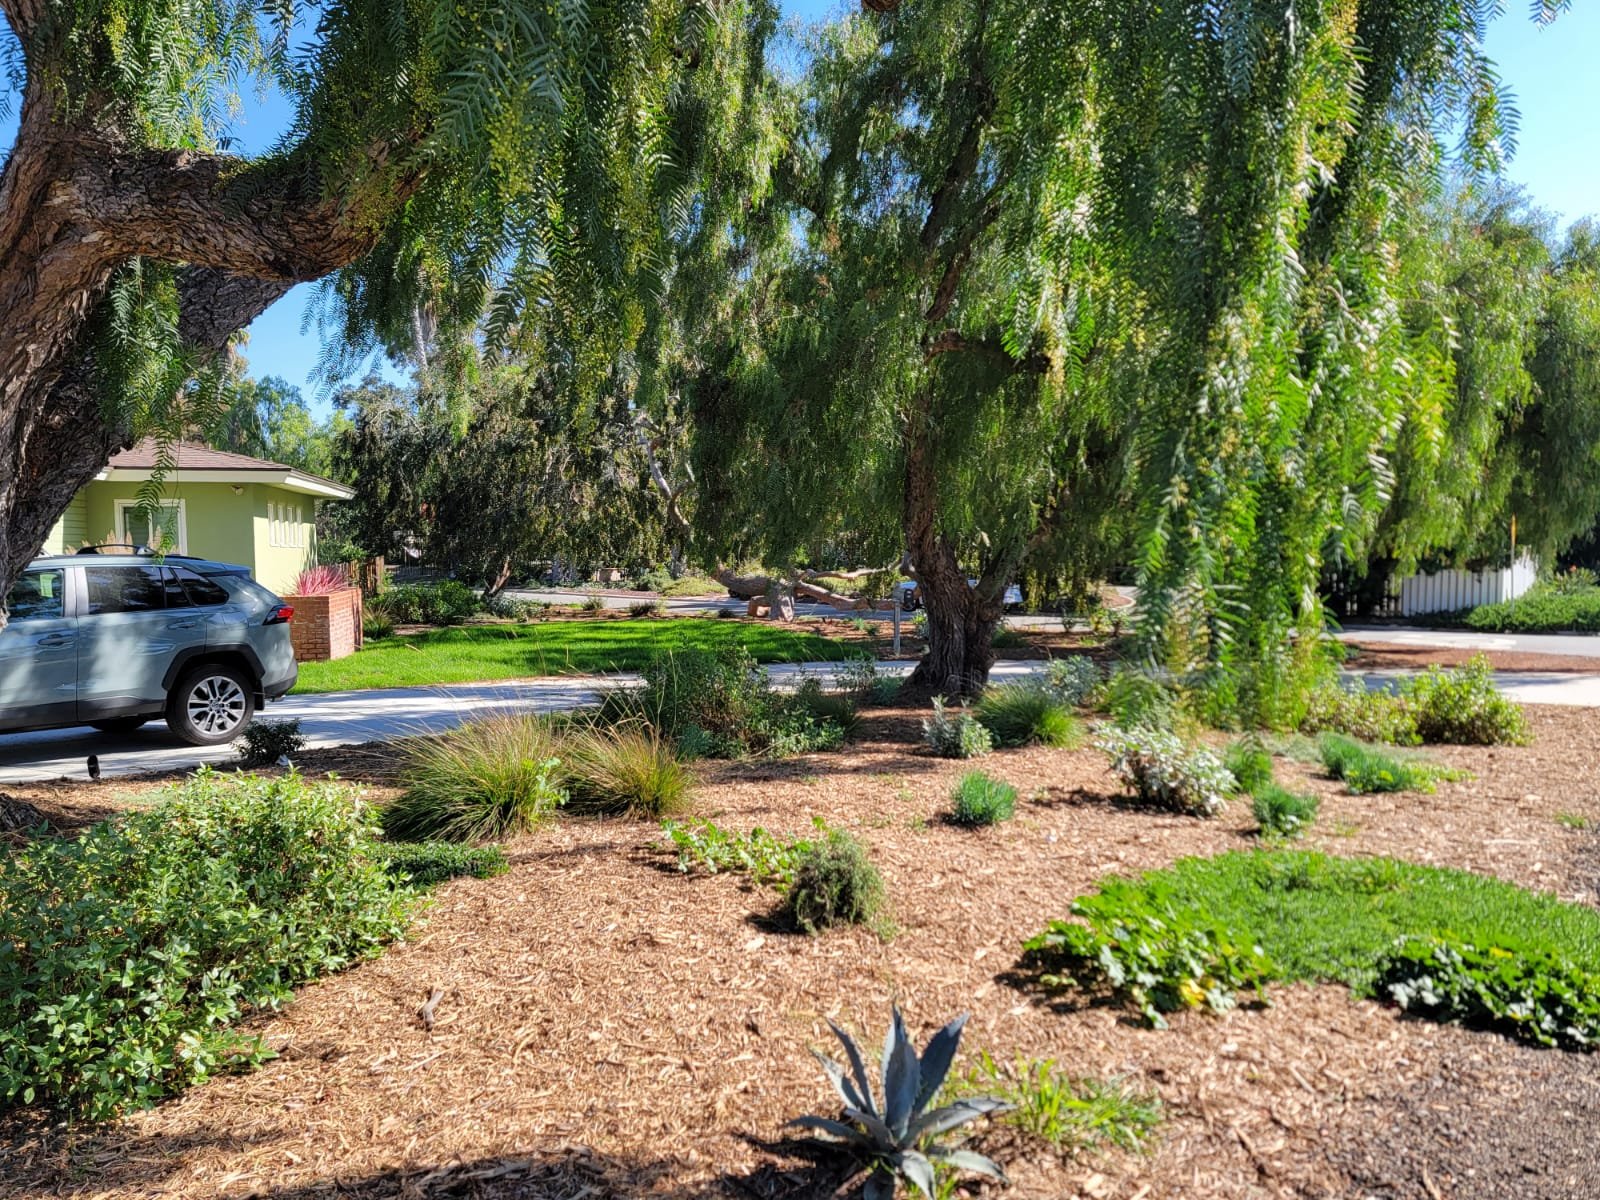 Nature Restoraton Project - Chula Vista, California